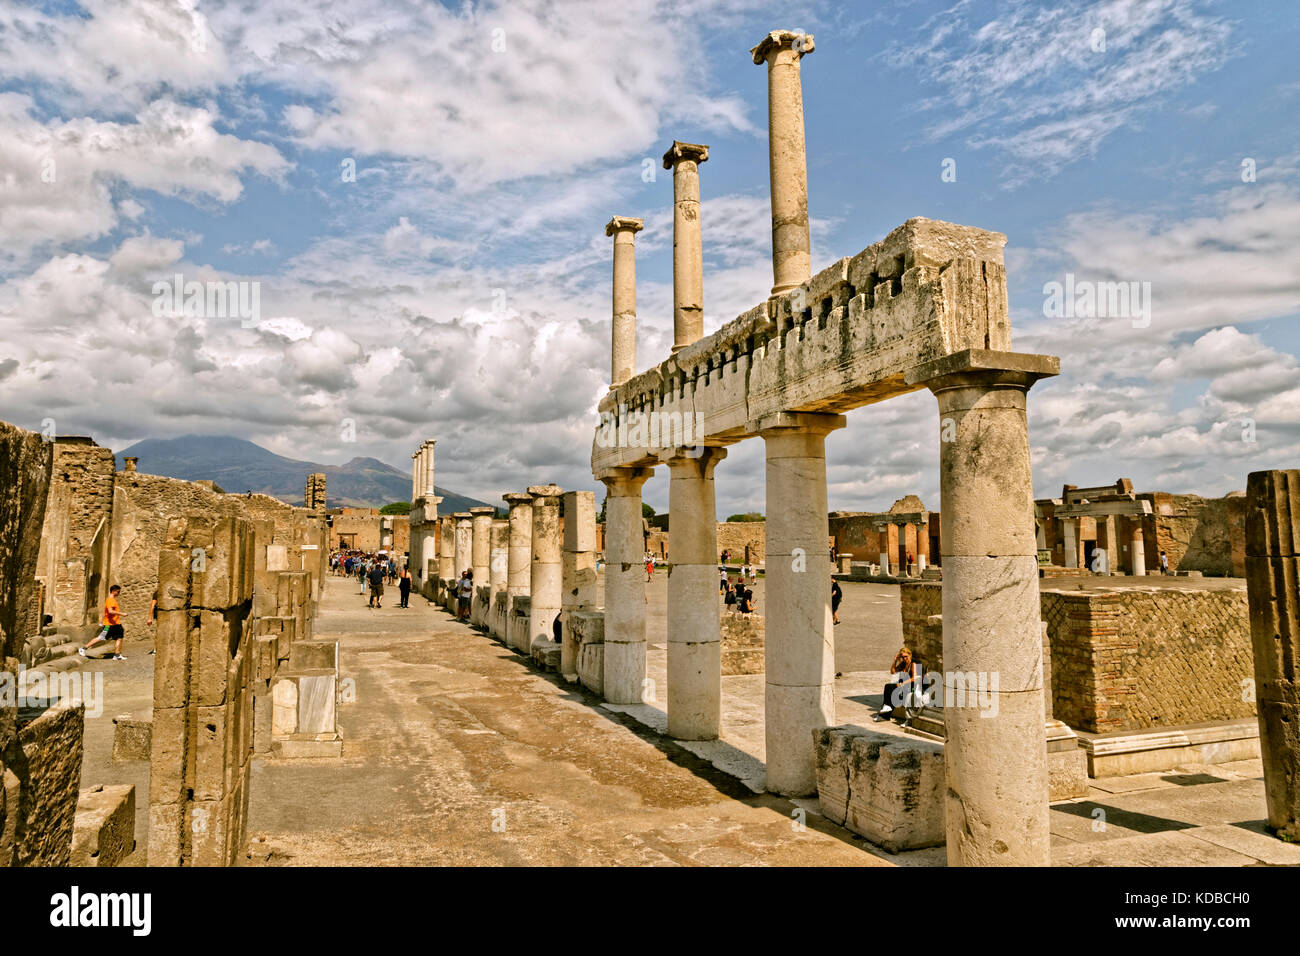 Façon arcadienne avec des colonnes doriques au Forum dans les ruines de la ville romaine de Pompéi à Pompei Scavi près de Naples, Italie. Le Vésuve au loin. Banque D'Images